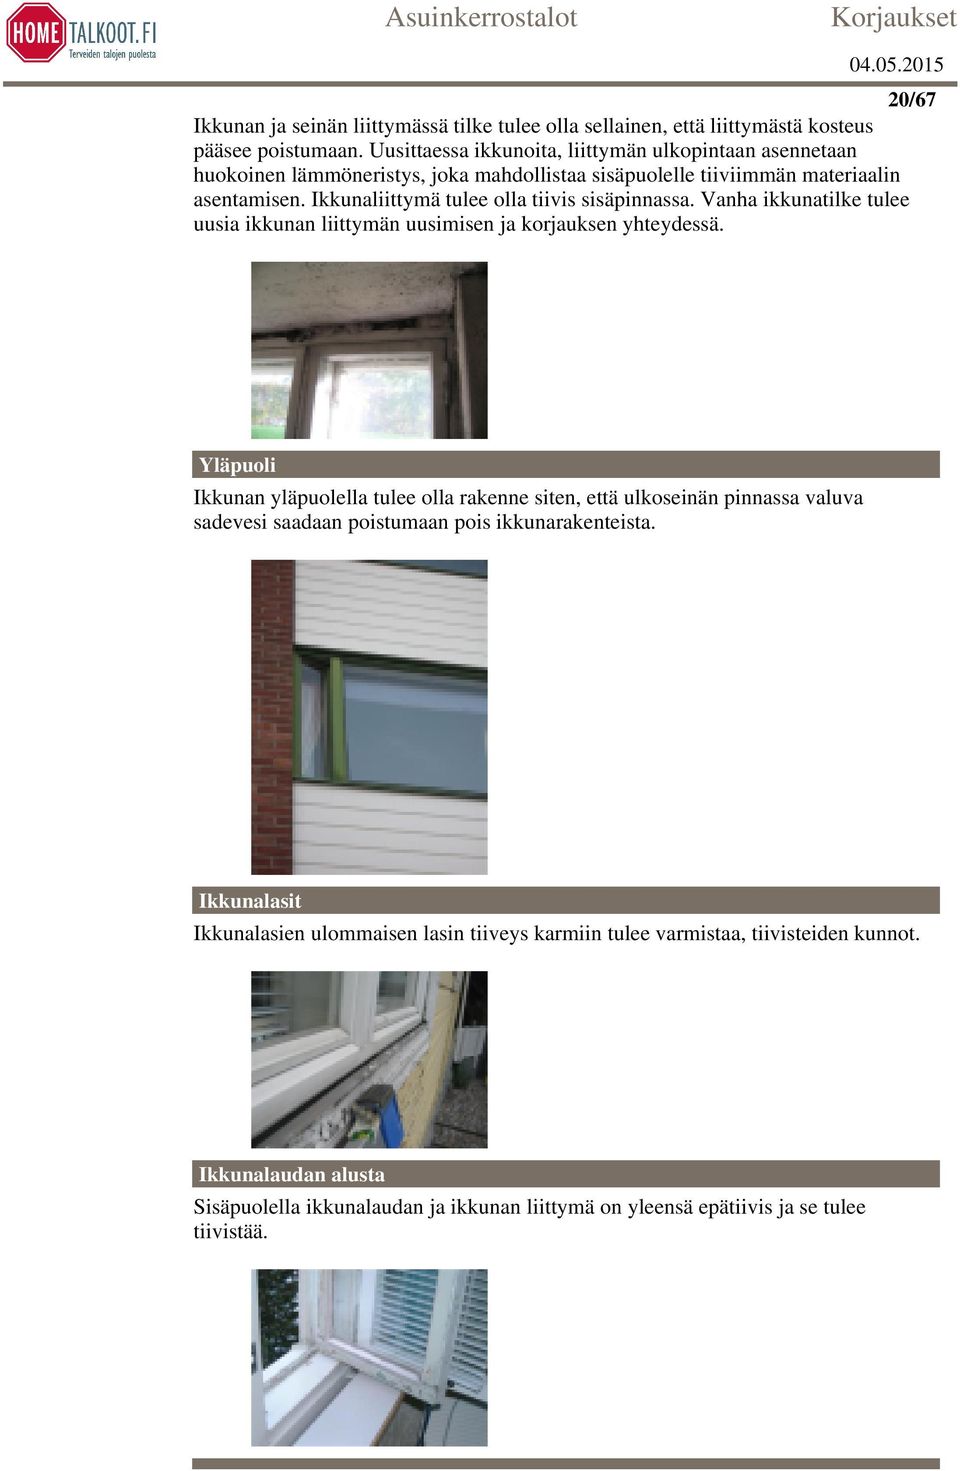 Ikkunaliittymä tulee olla tiivis sisäpinnassa. Vanha ikkunatilke tulee uusia ikkunan liittymän uusimisen ja korjauksen yhteydessä.